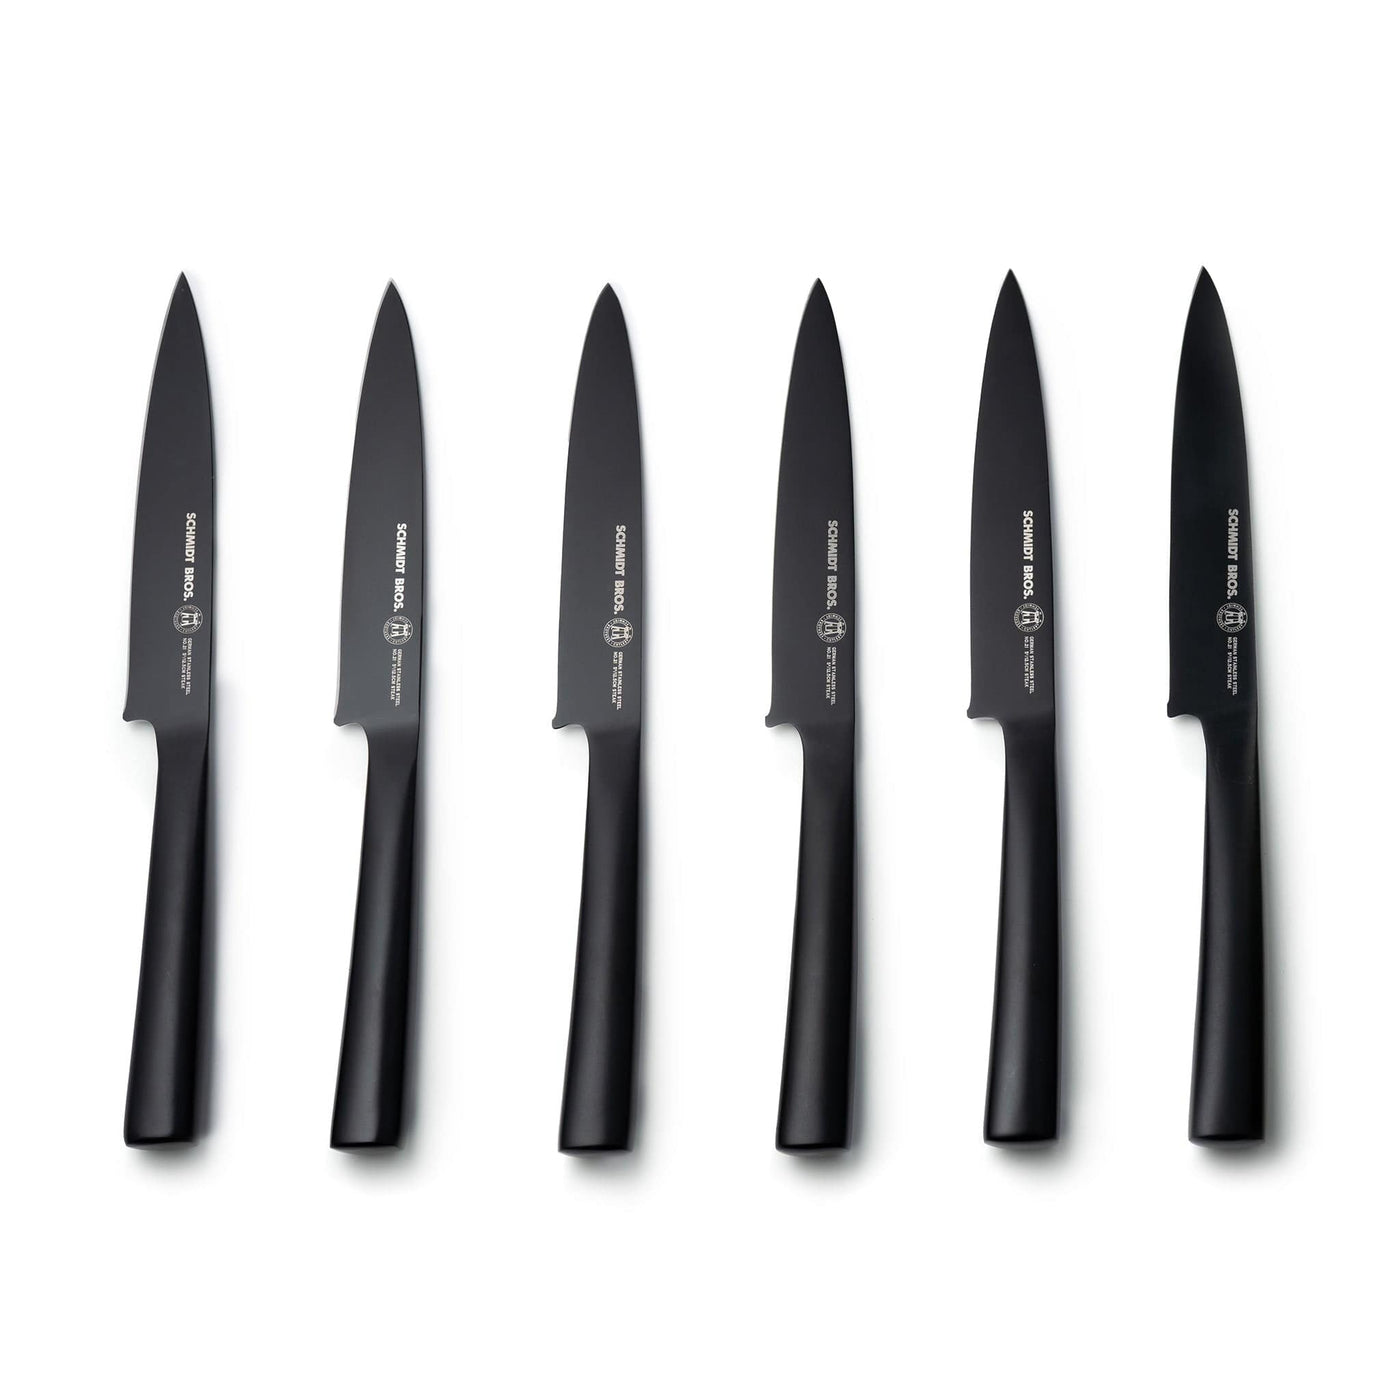 New Schmidt Brothers Jet Black 7-PC Knife Block Set Matte Black